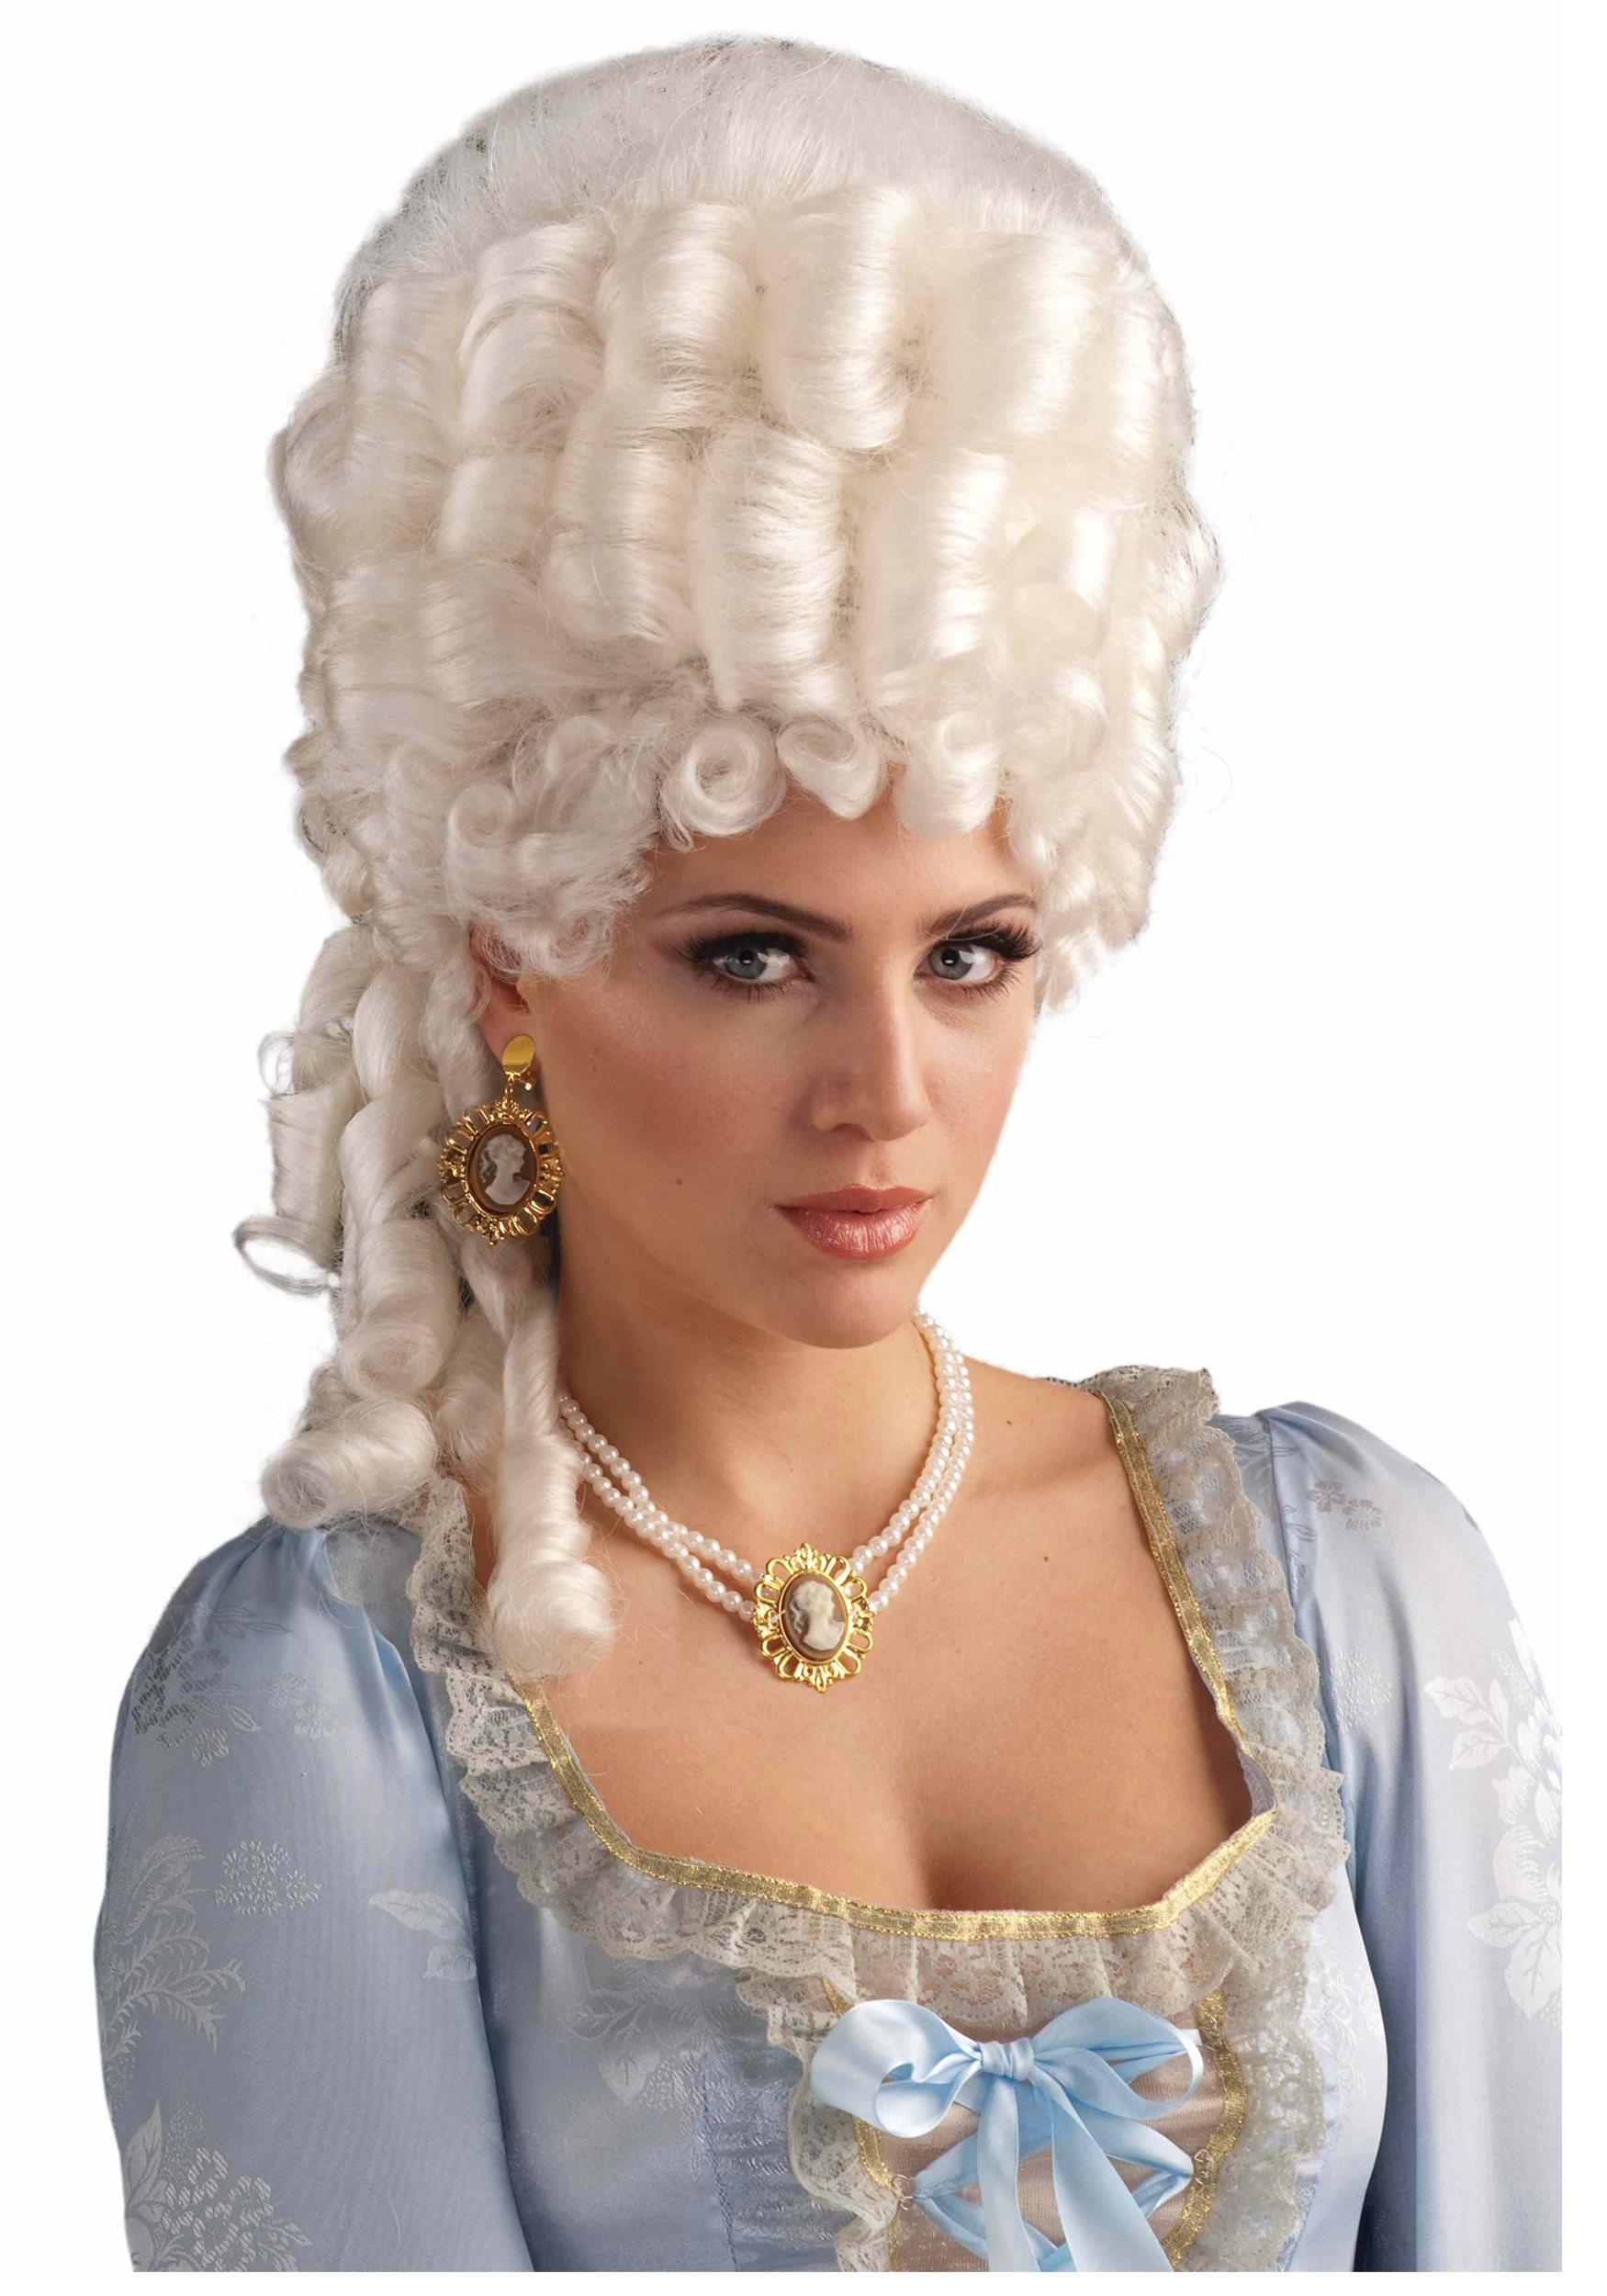 Marie Antoinette Wig